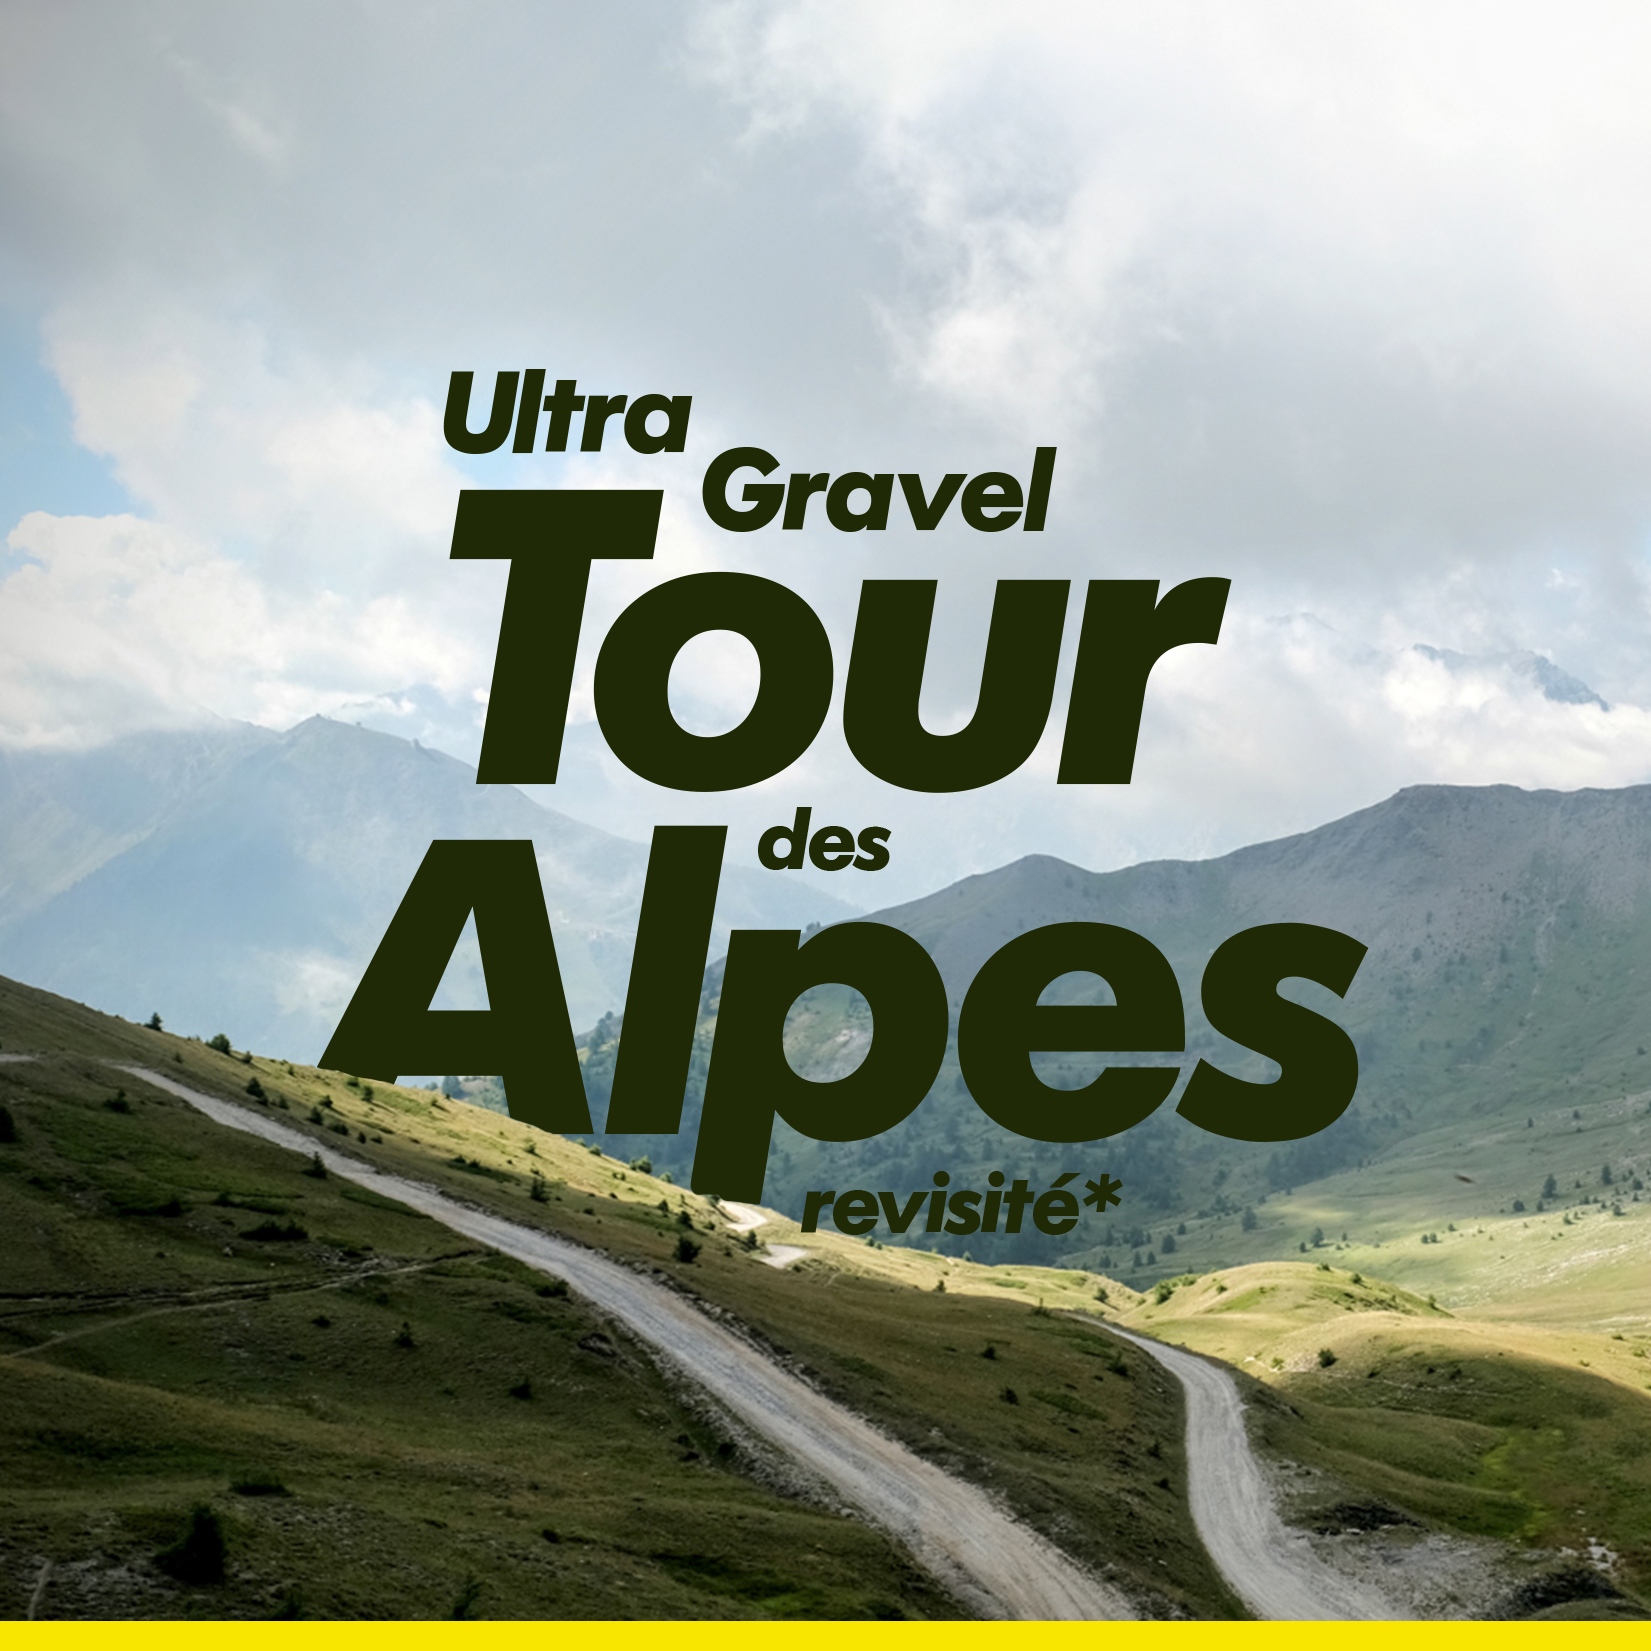 🚴🏻‍♀️ L’ultra Gravel Tour des Alpes, revisité.